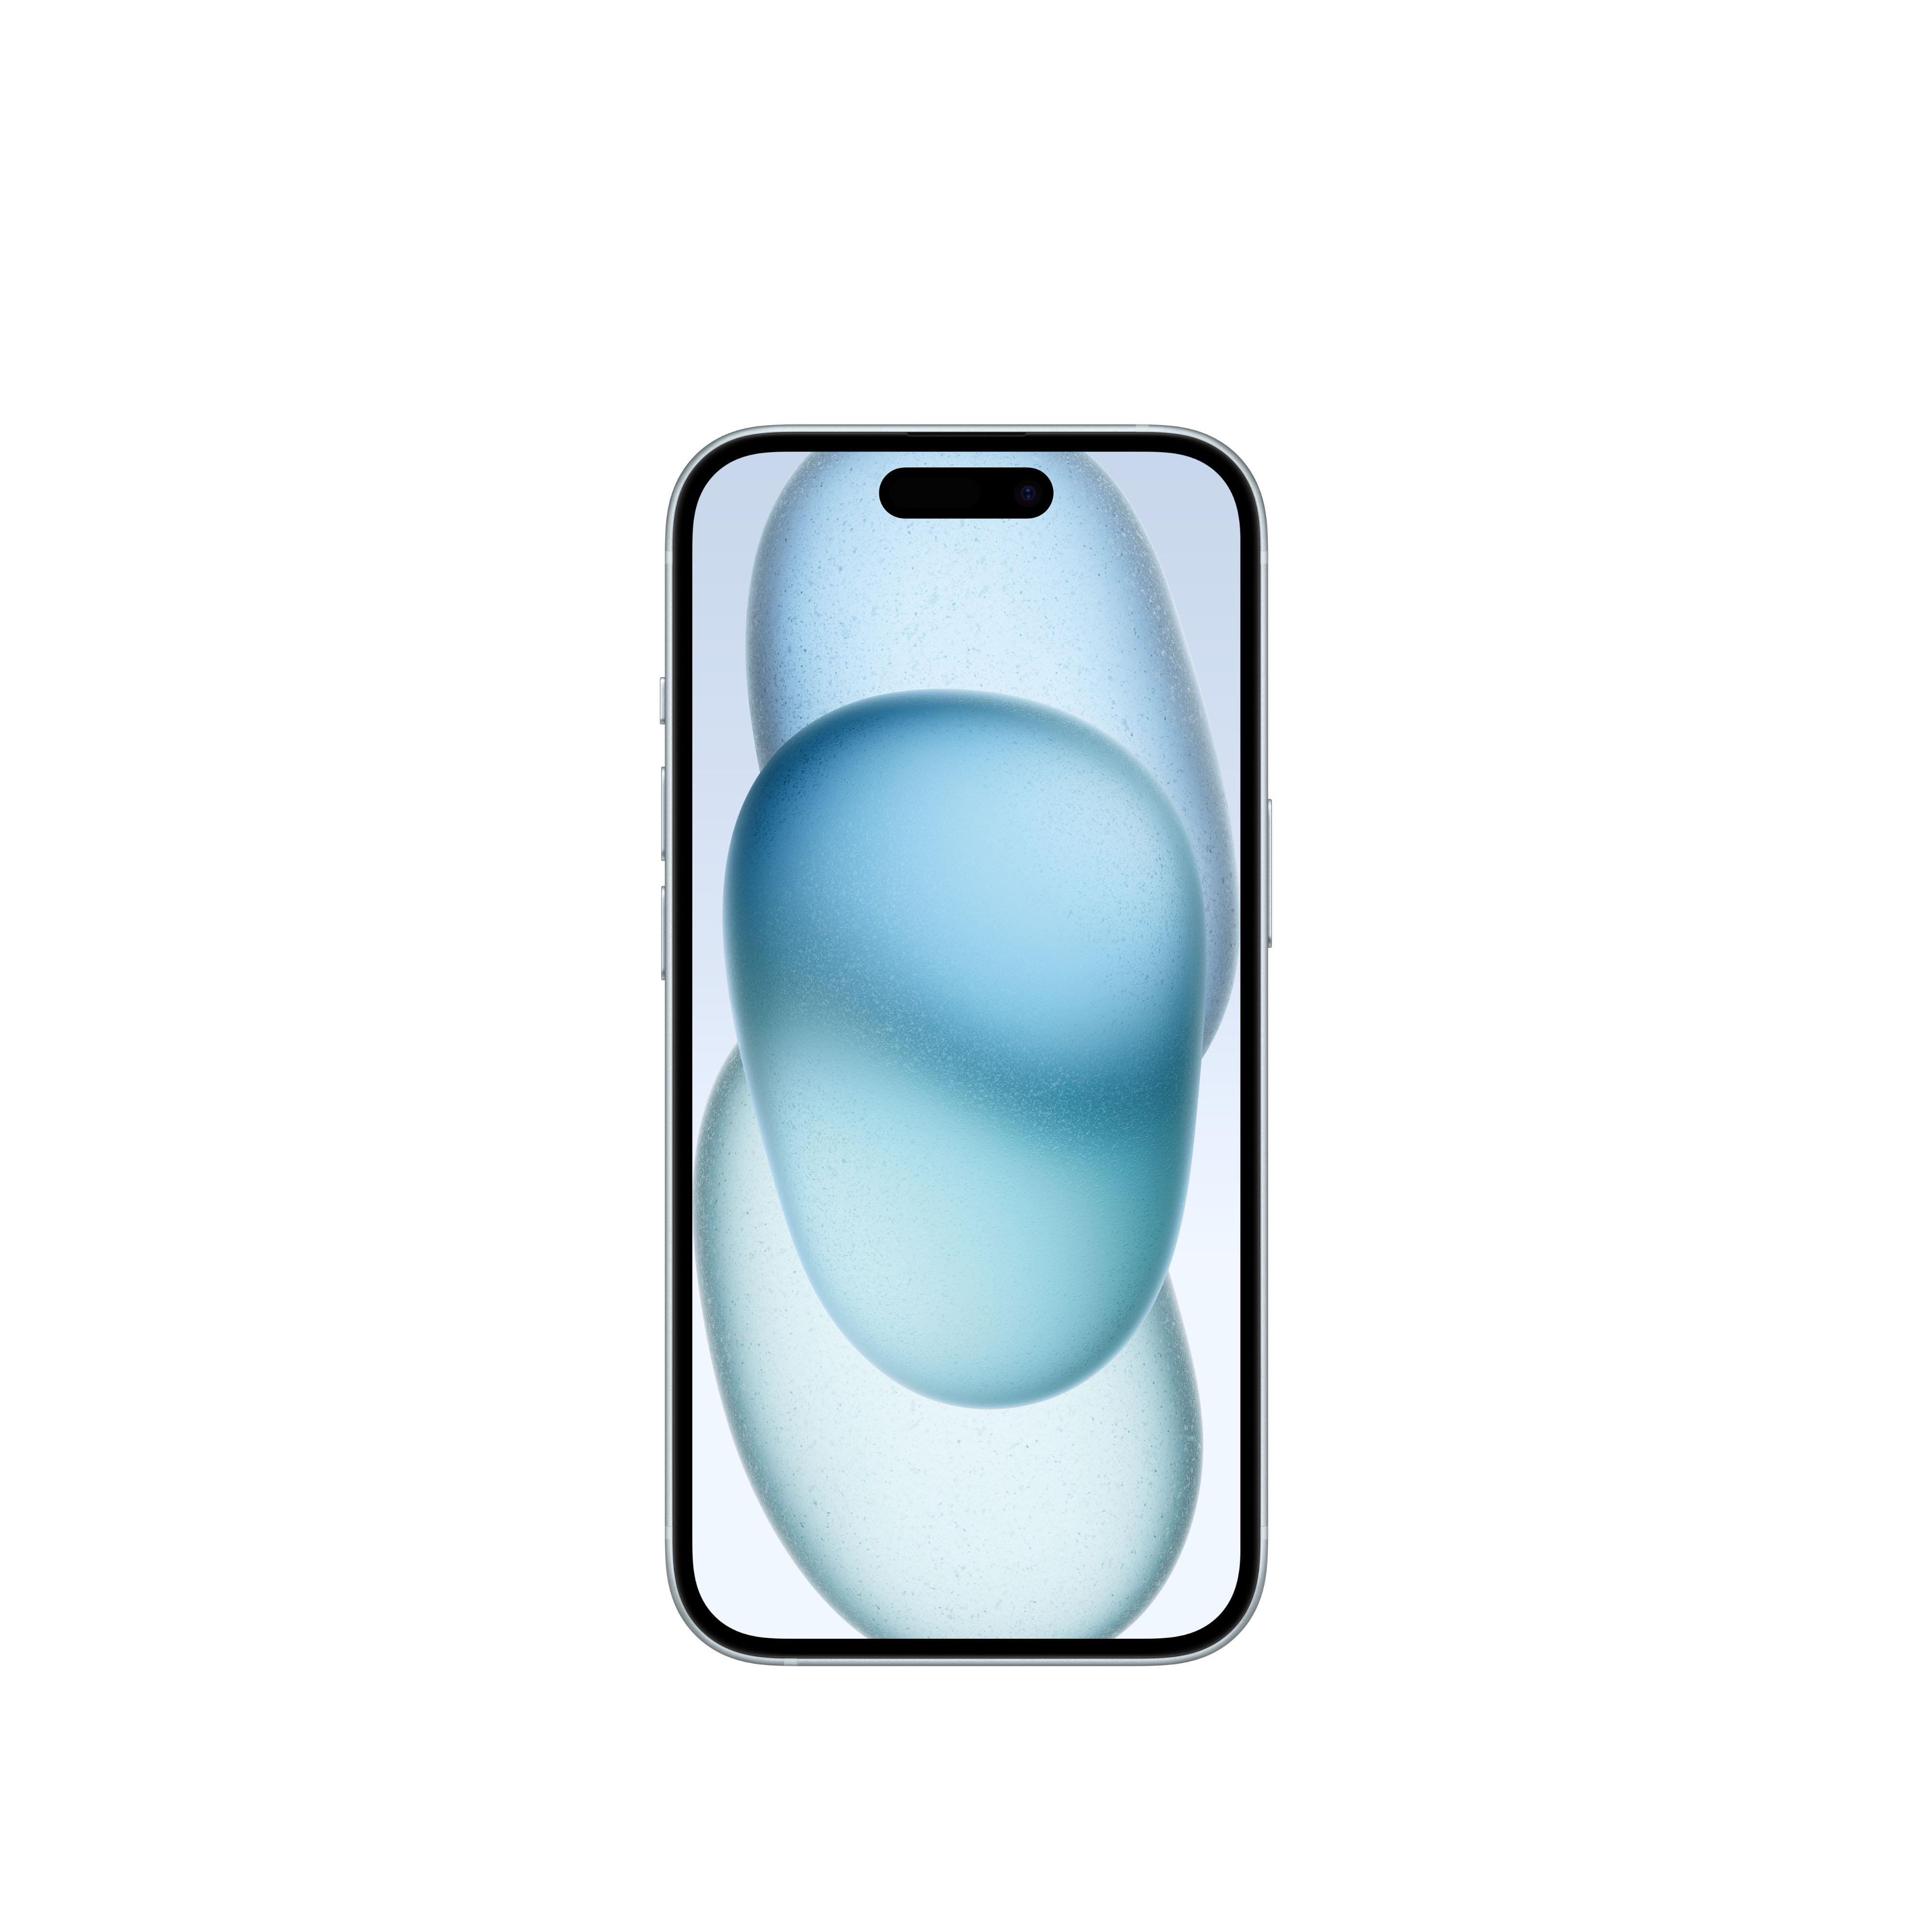 Blau 256 APPLE SIM iPhone 5G GB 15 Dual